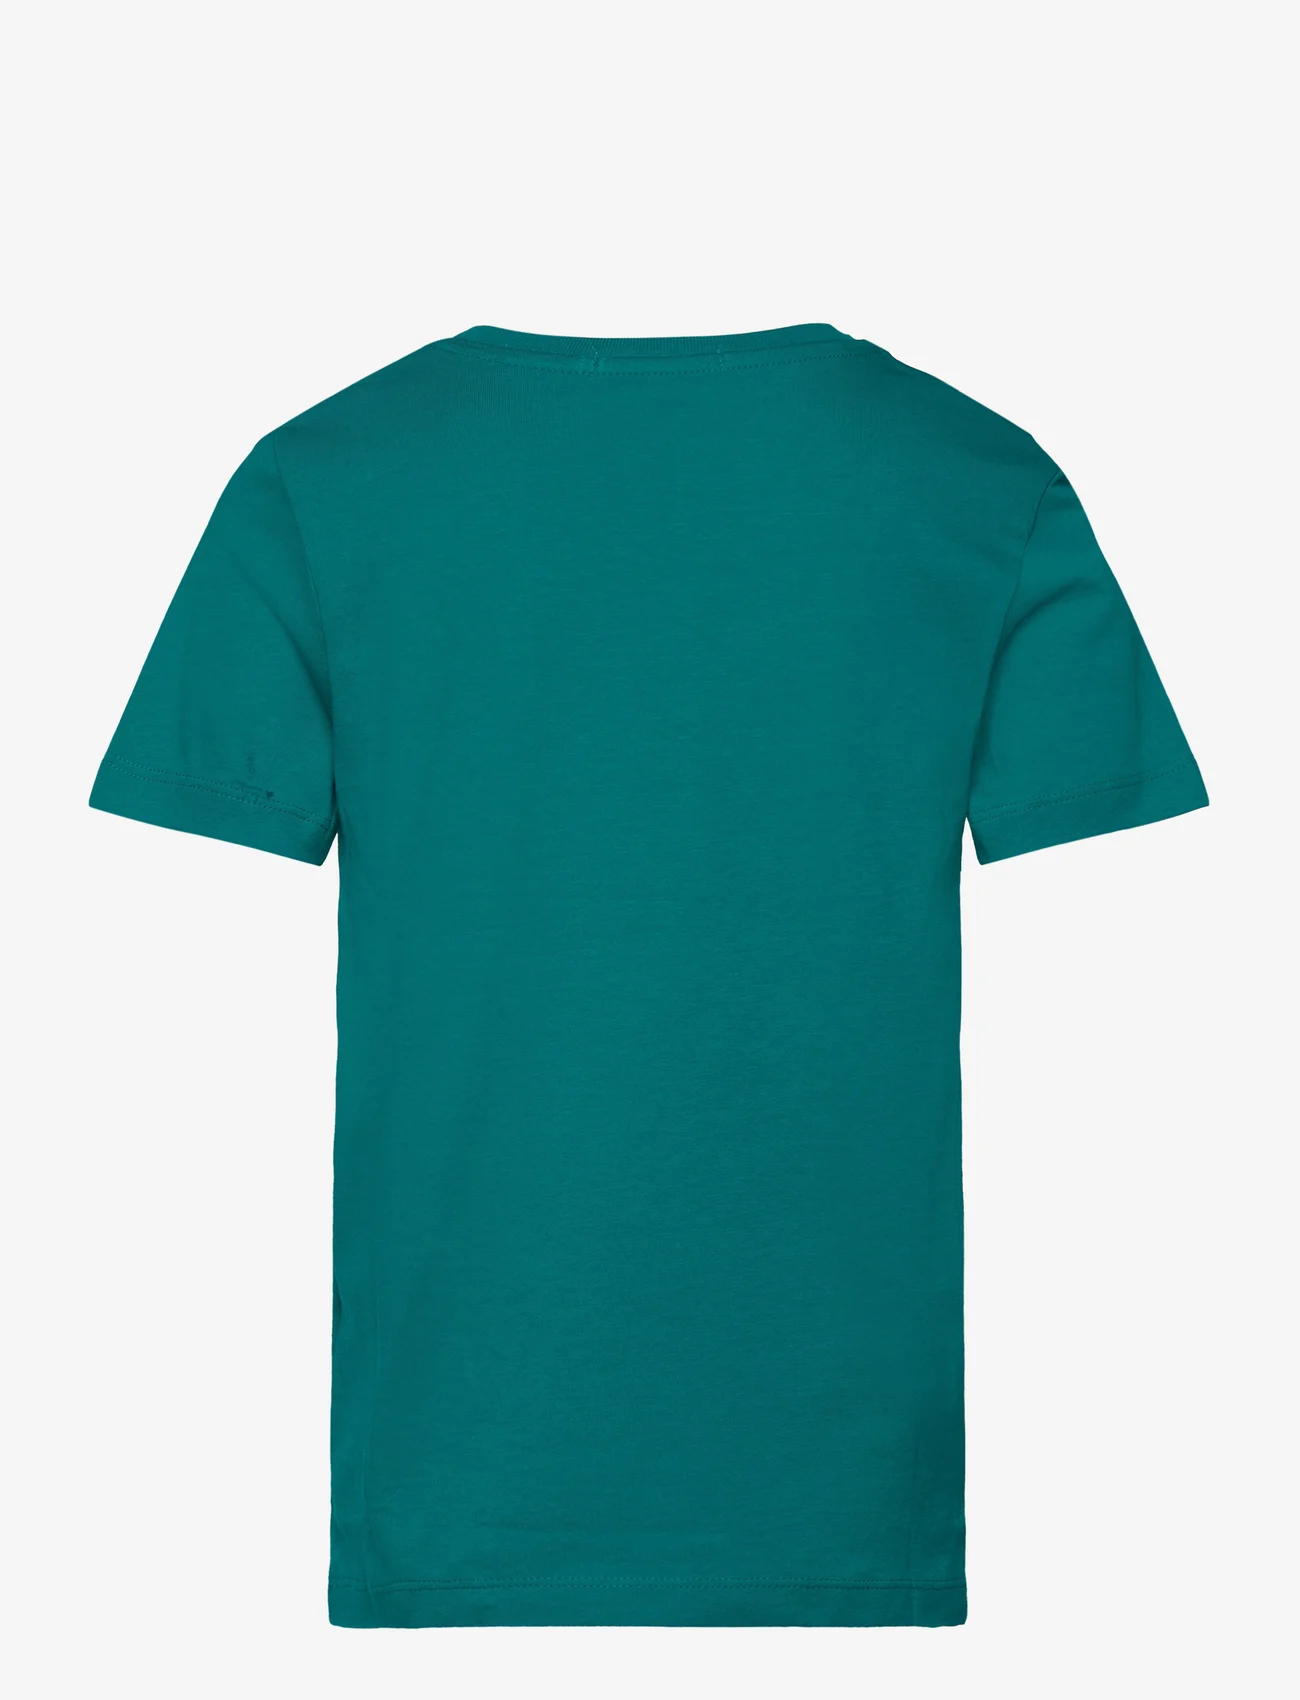 Calvin Klein - CK MONOGRAM SS T-SHIRT - short-sleeved t-shirts - fanfare - 1